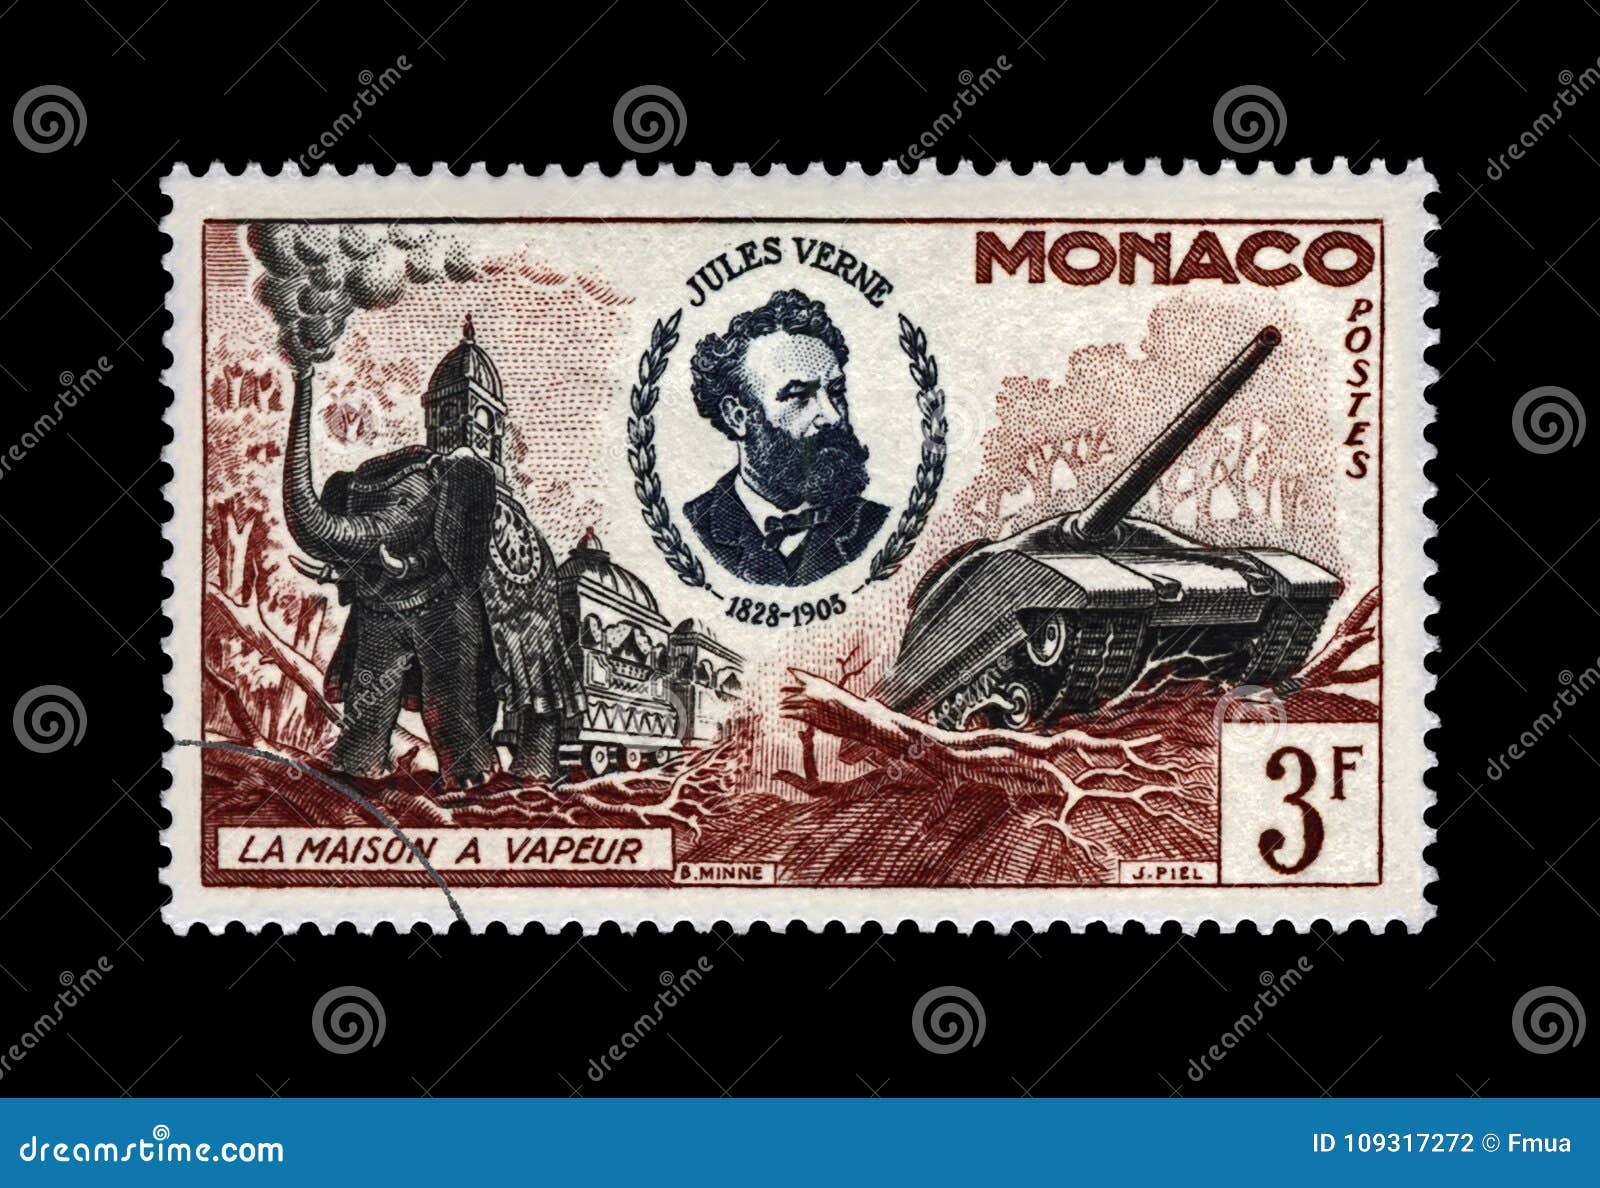 Risultati immagini per sellos postal maquina